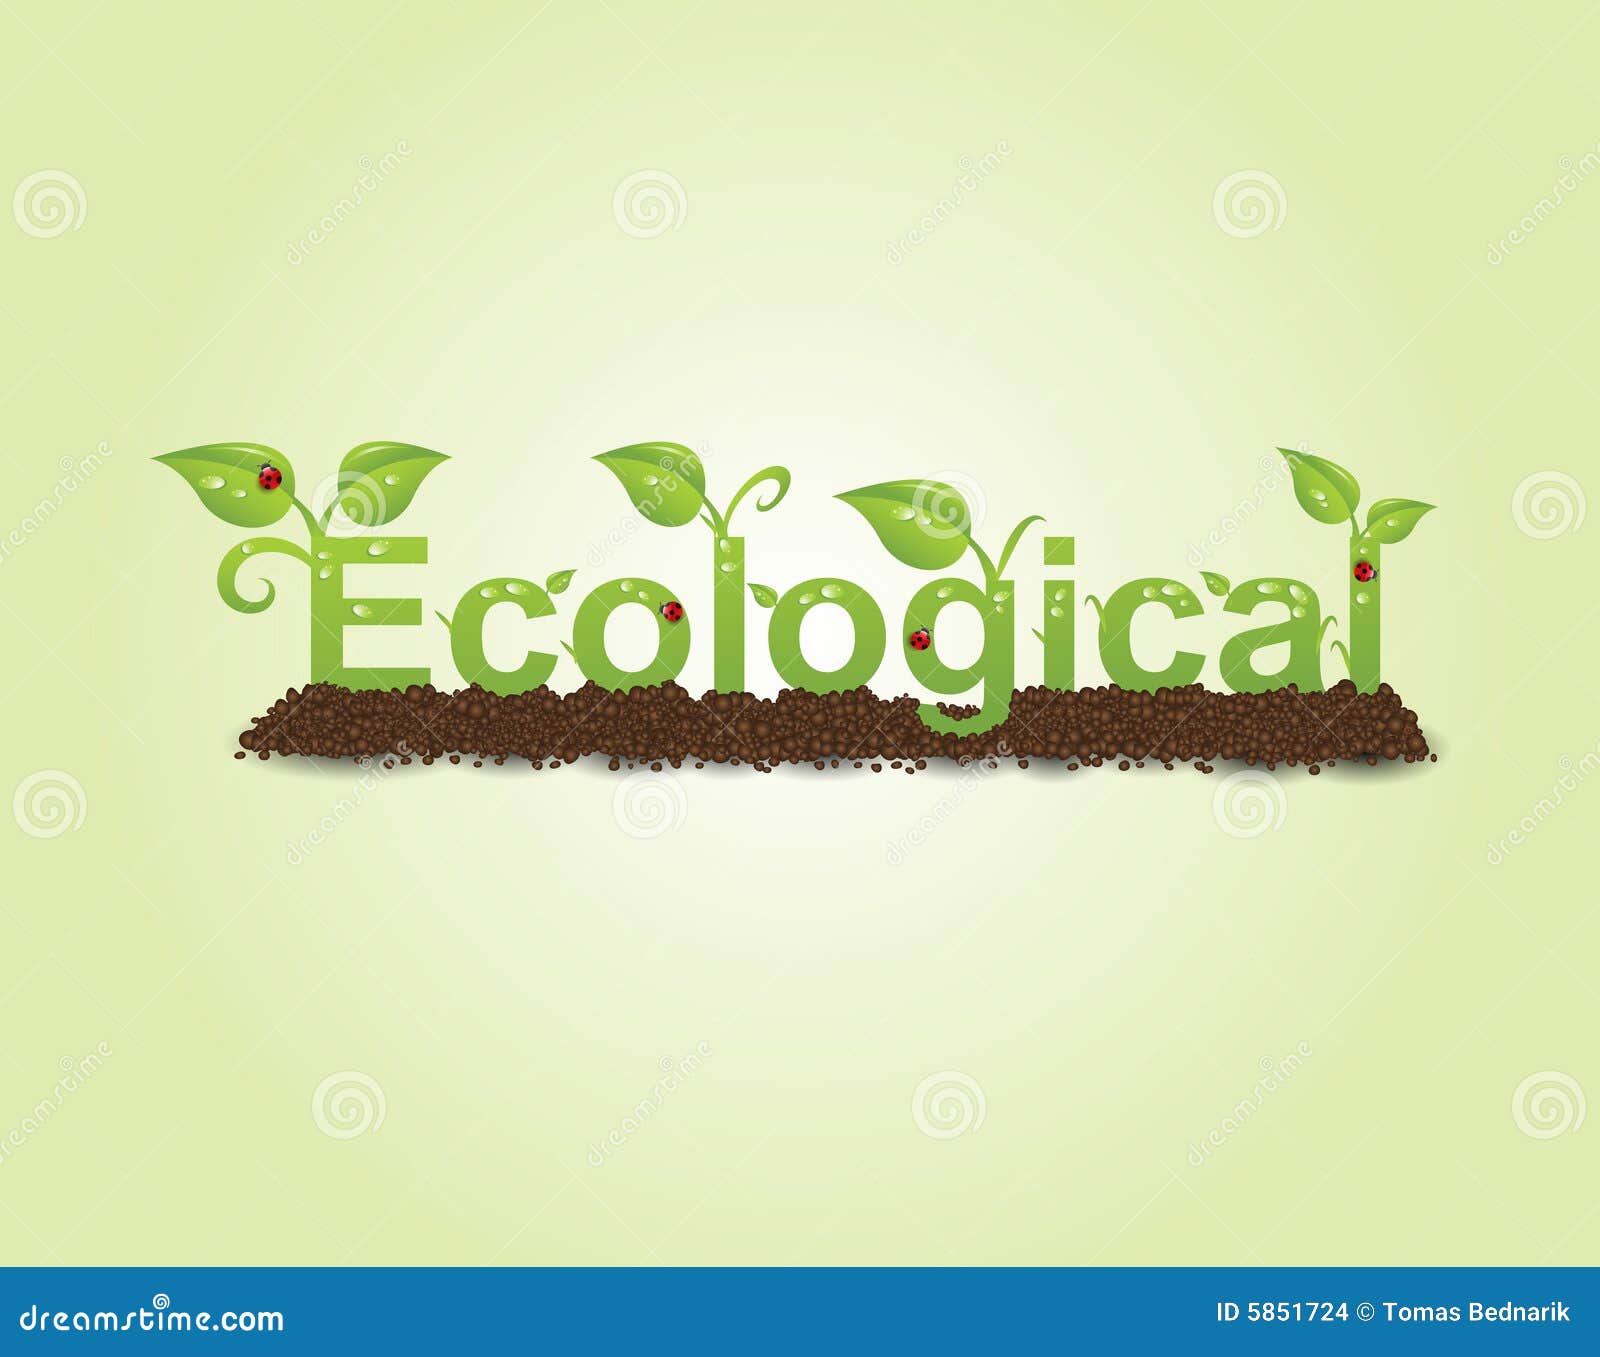 ecological caption